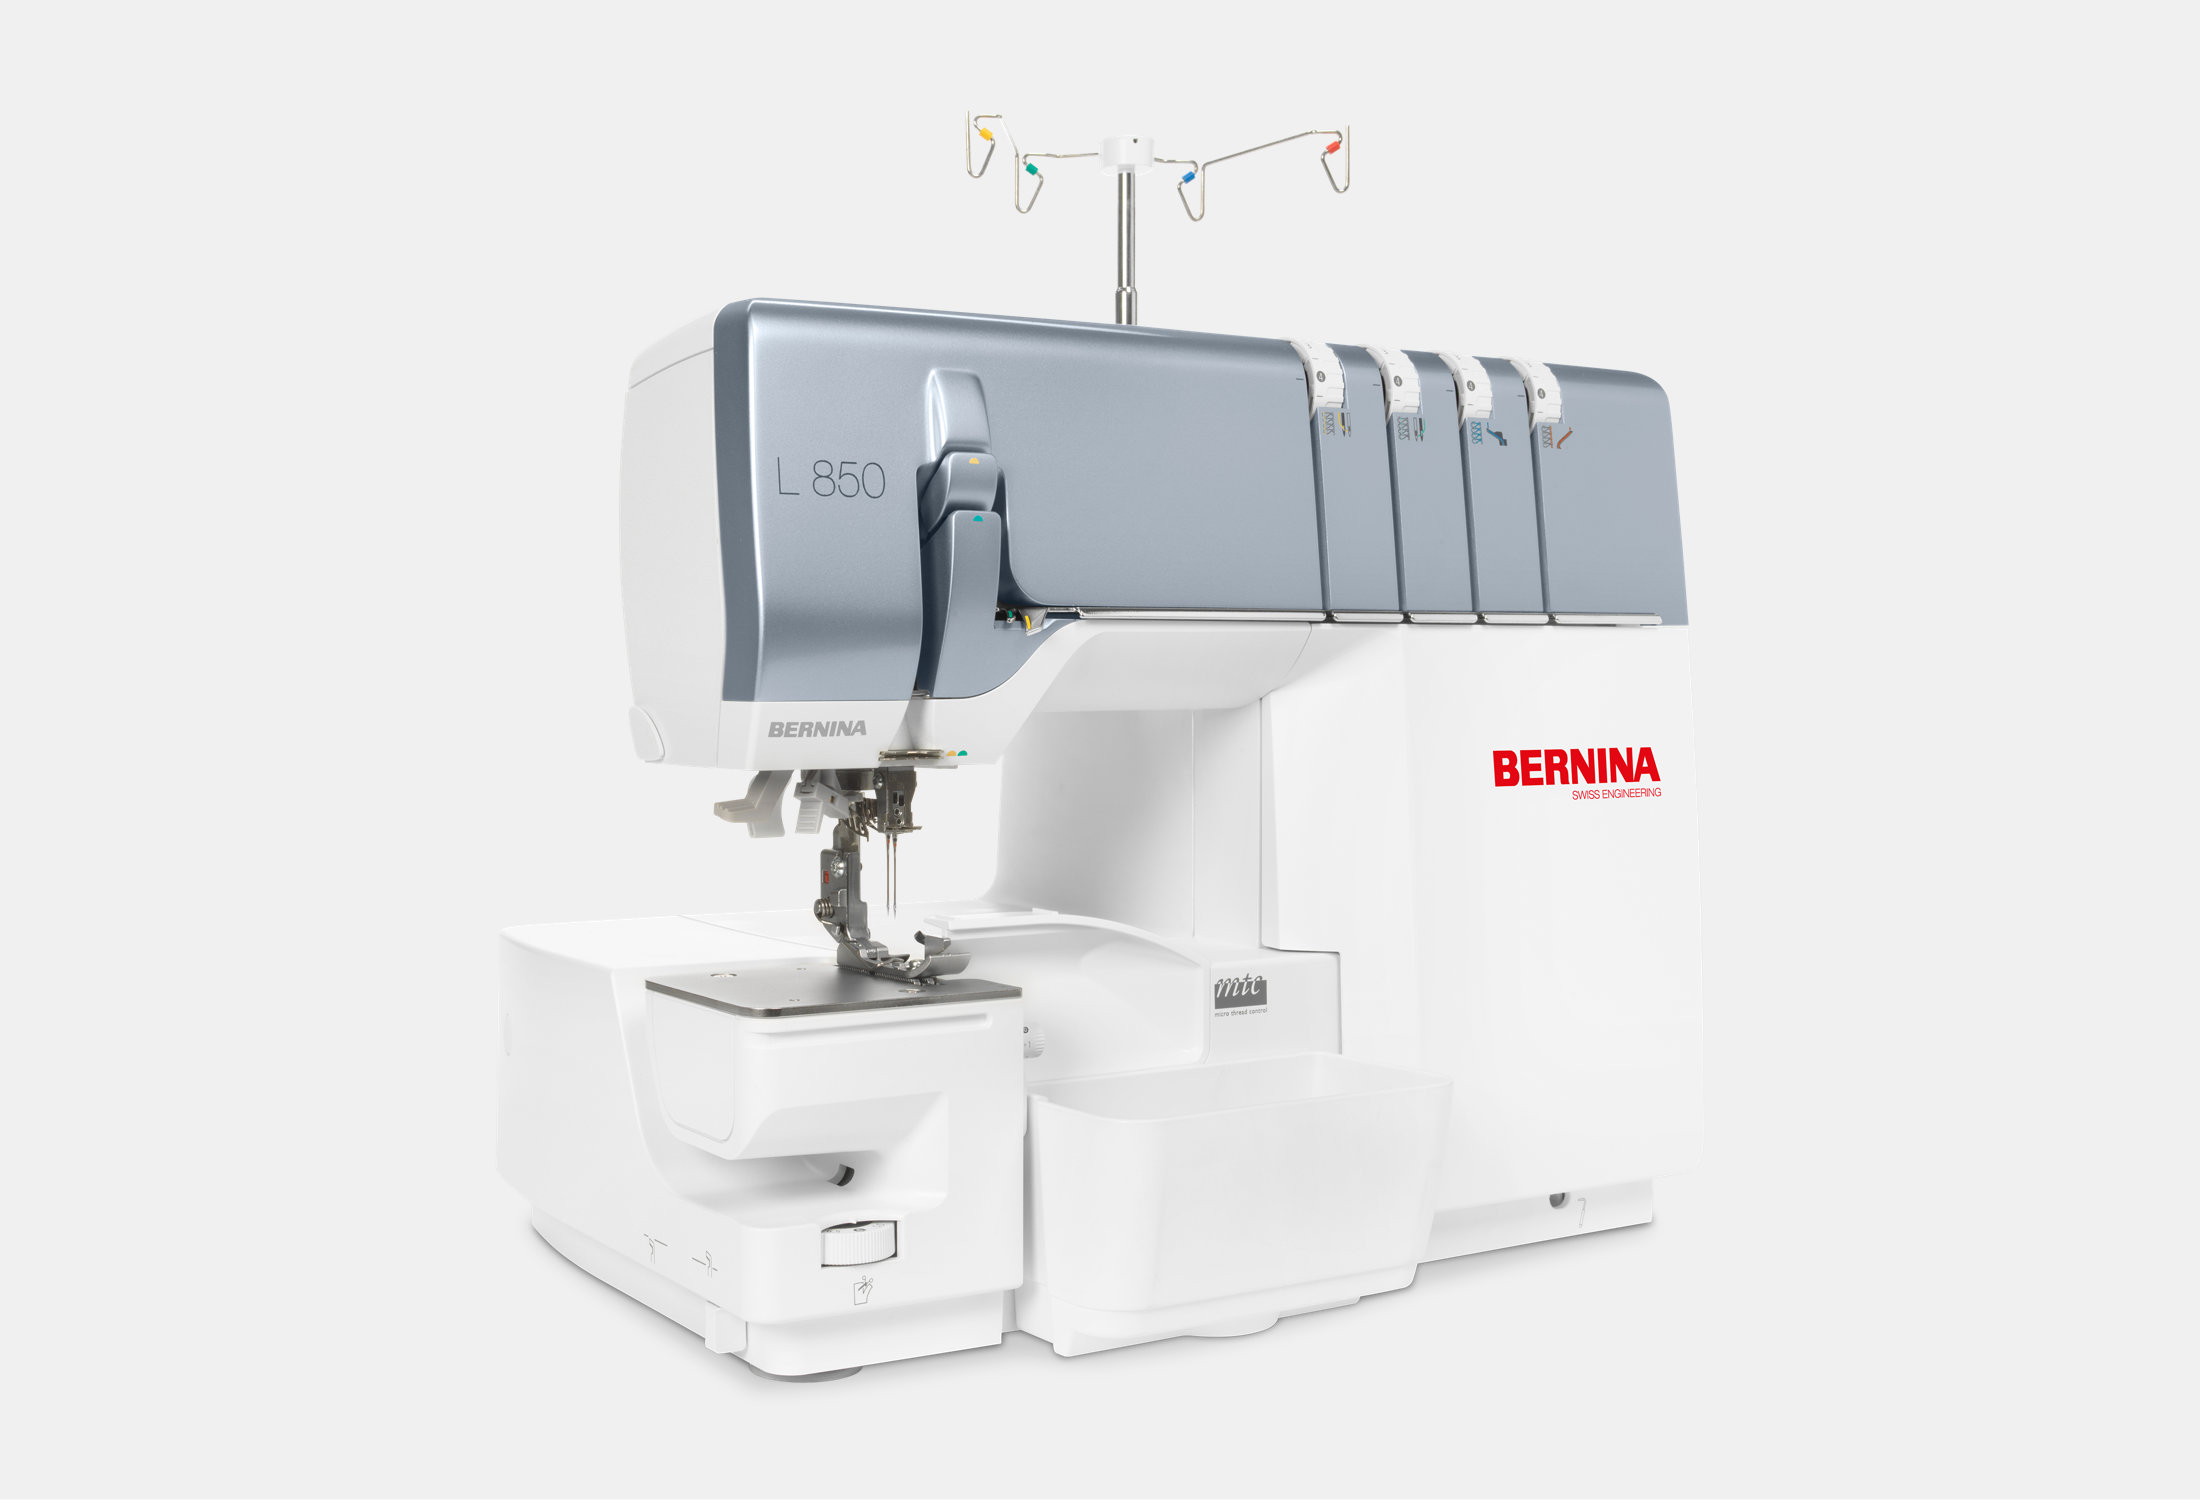 BERNINA L 850 - For professional overlock seams - BERNINA